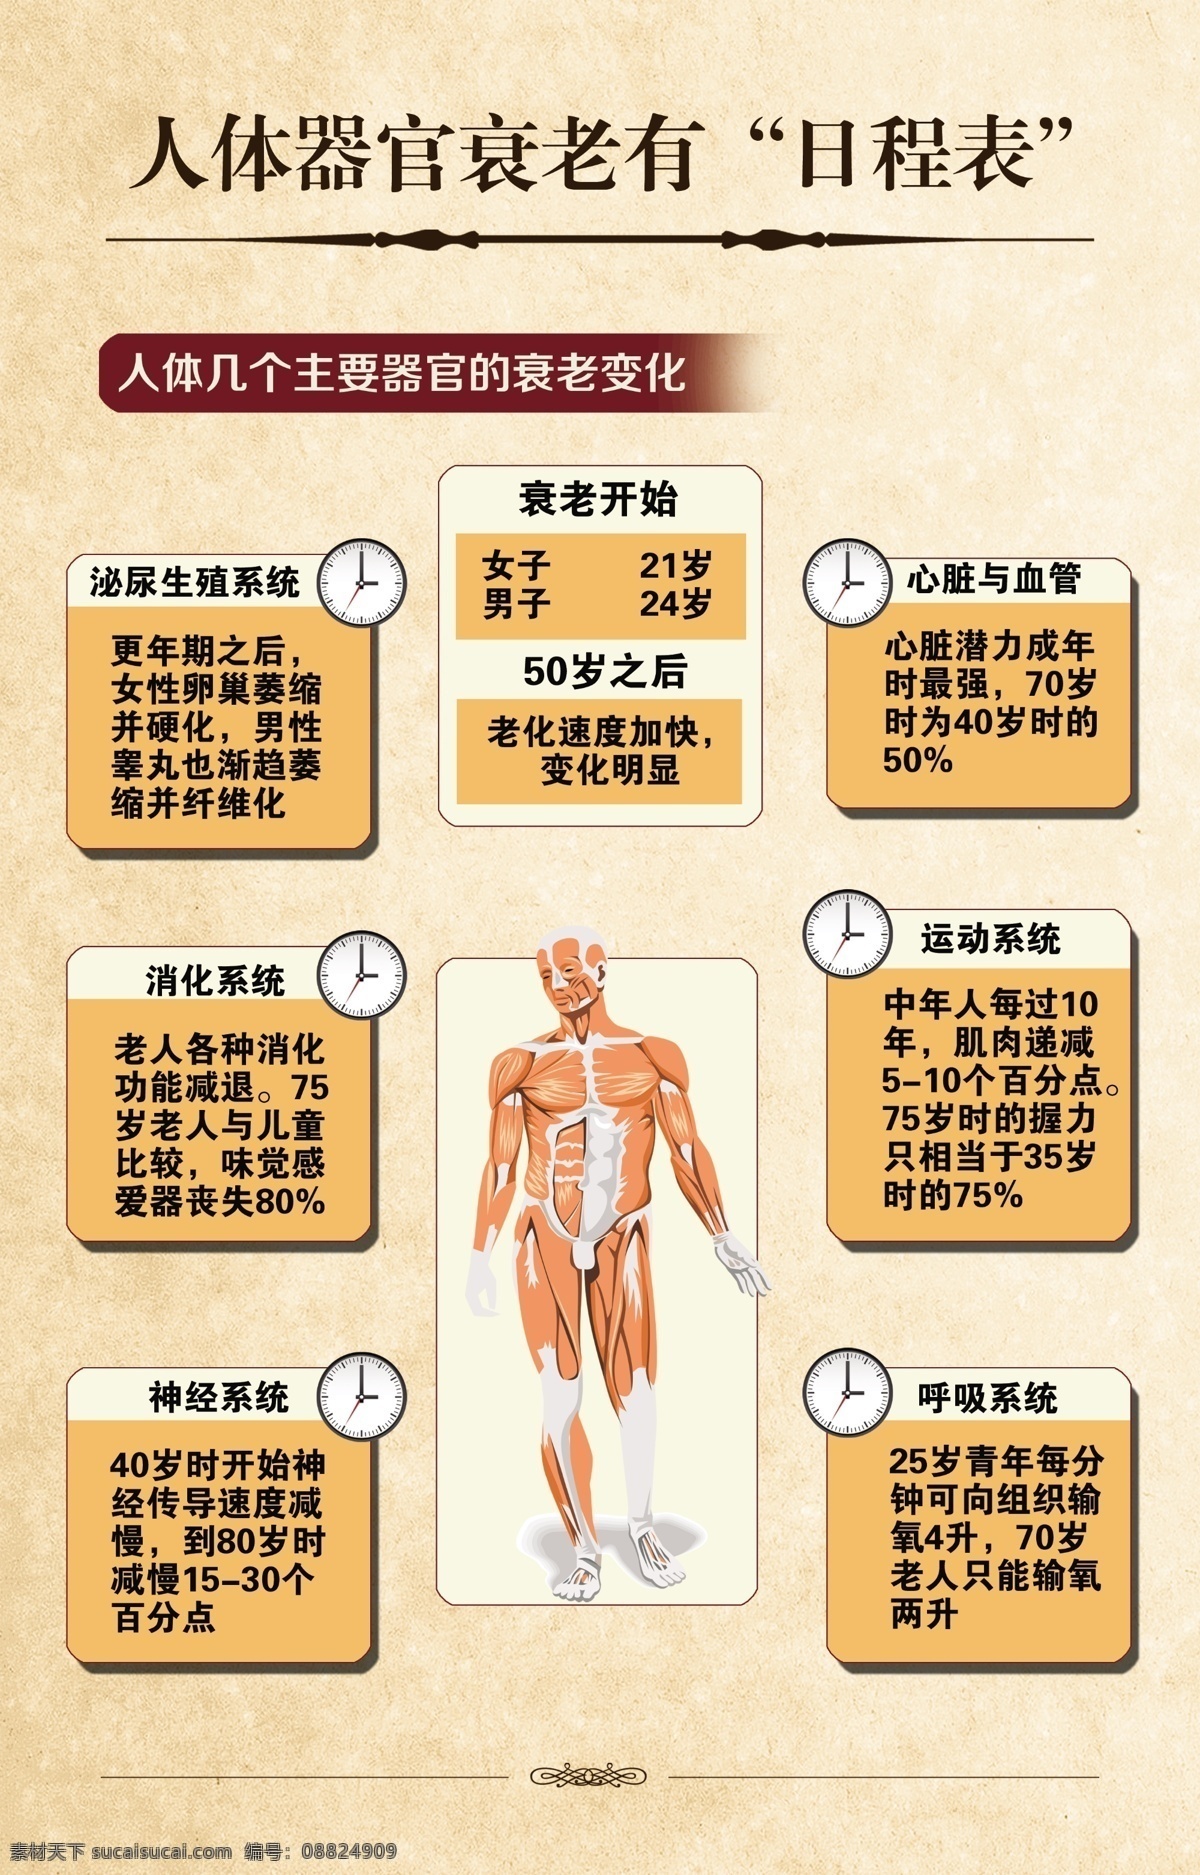 人体衰老 人体肌肉组织 钟表 人体器官衰老 中医黄色背景 设计模型 生活百科 医疗保健